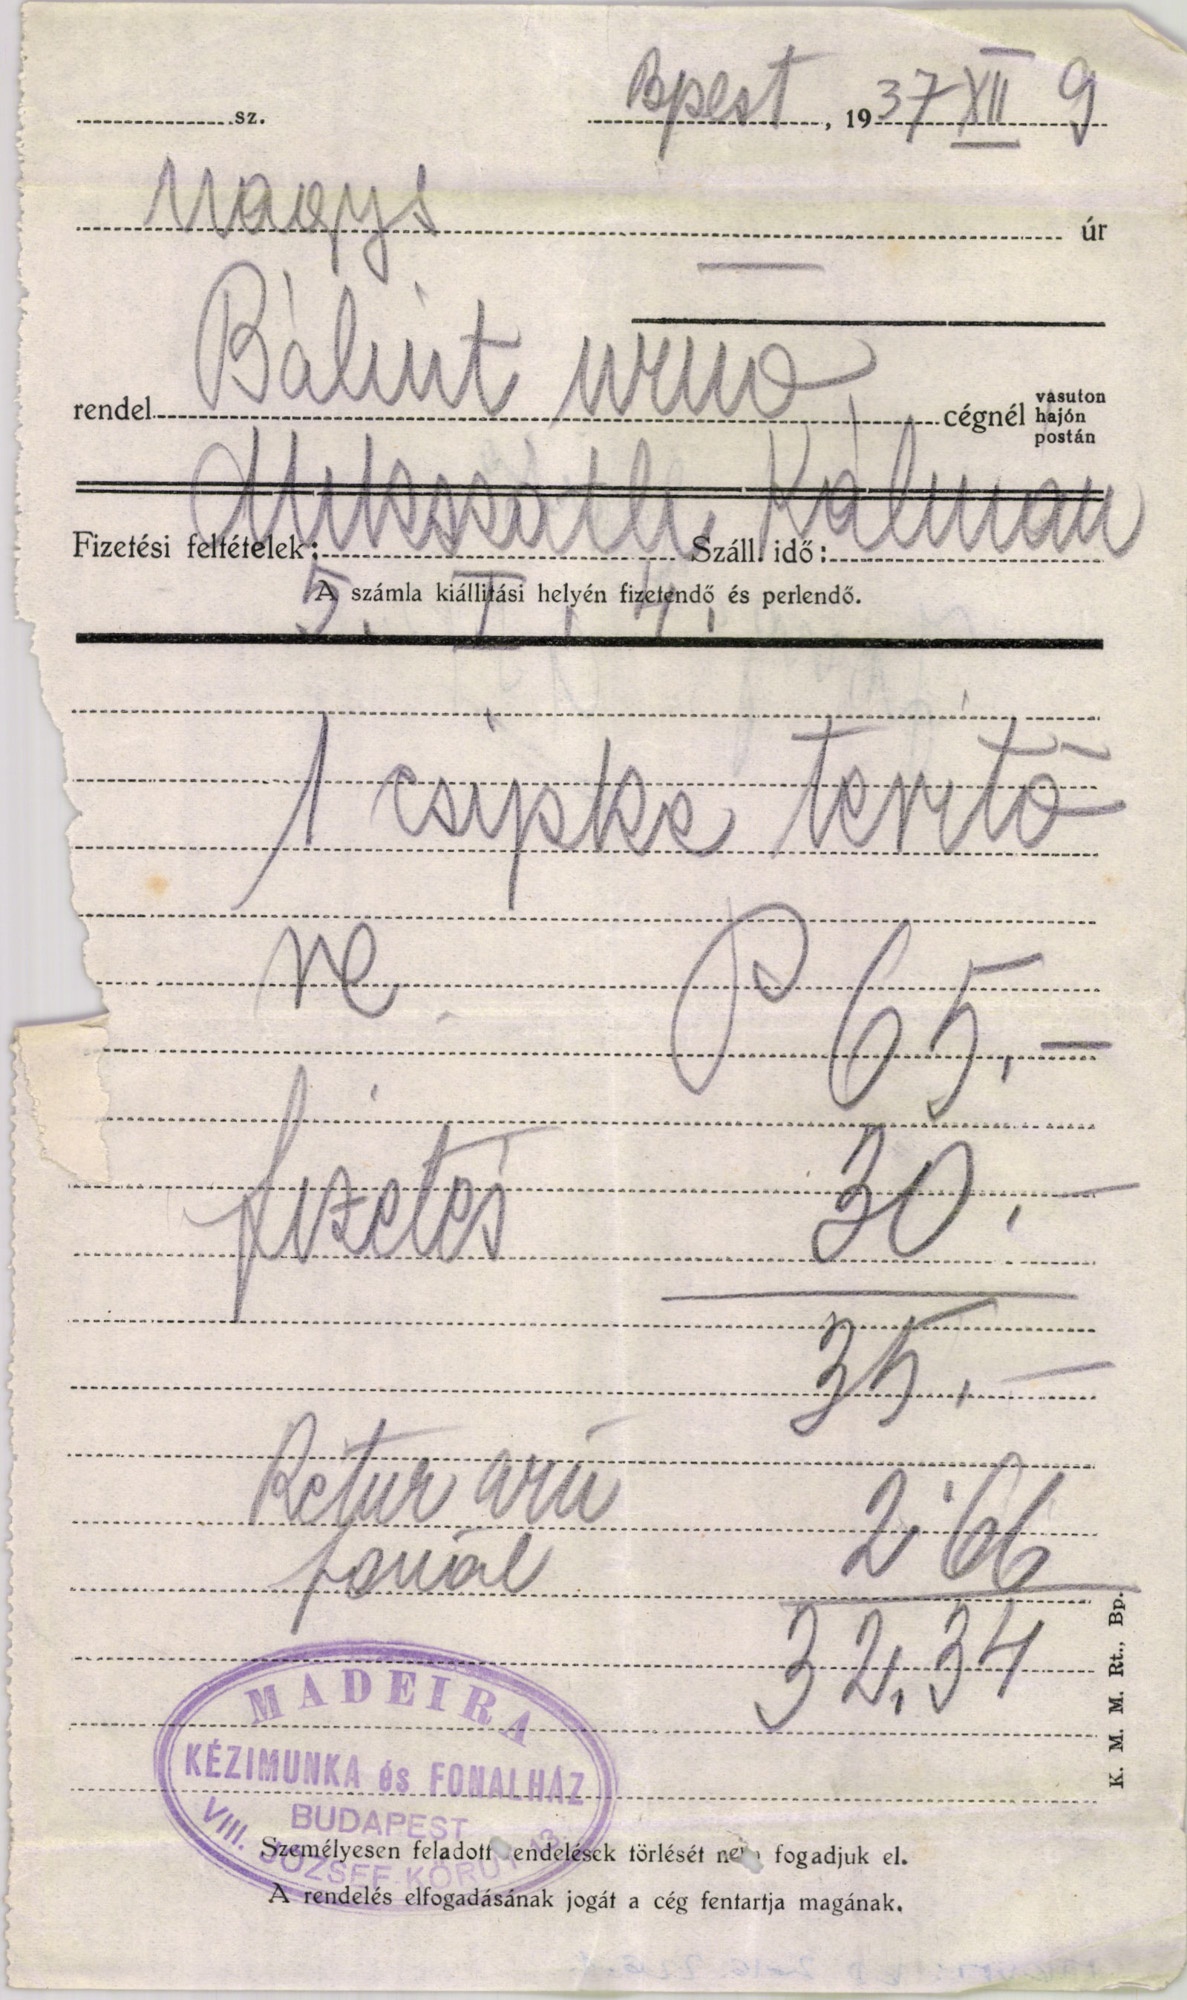 Madeira Kézimunka és fonalház előnyomda, függöny és függönyanyagok, kézimunka filék (Magyar Kereskedelmi és Vendéglátóipari Múzeum CC BY-NC-SA)